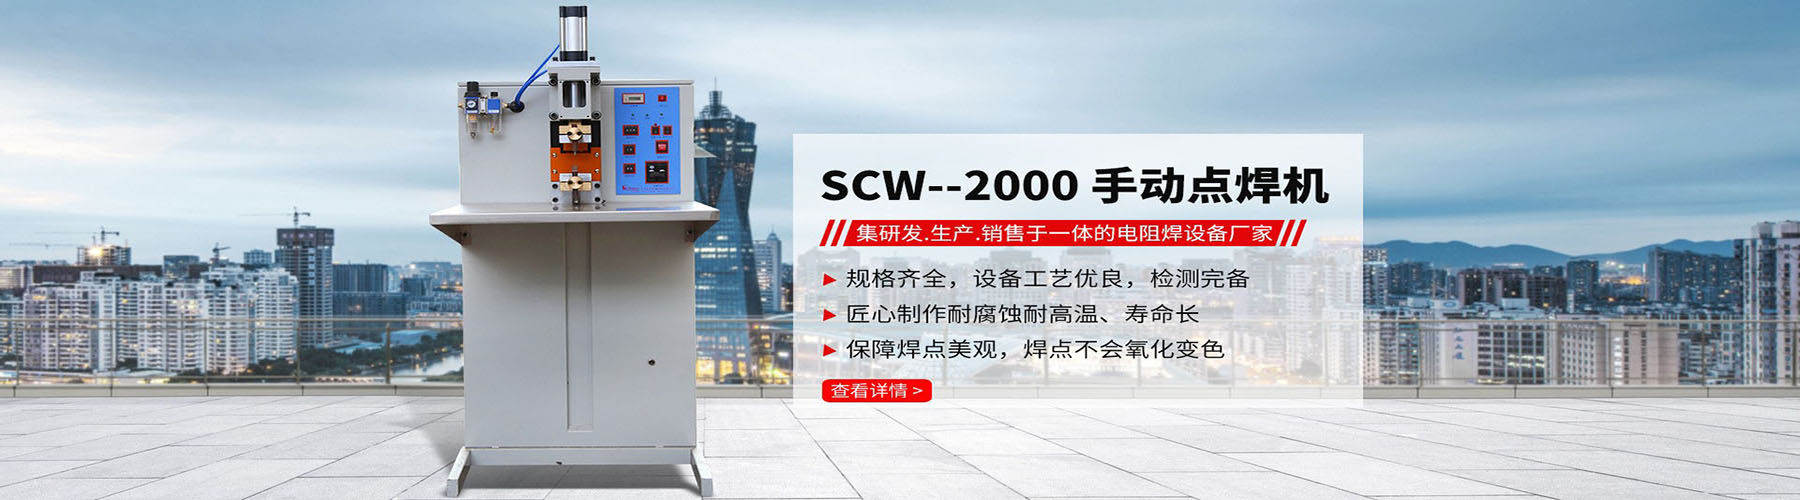 電容儲能點焊機scw-2000